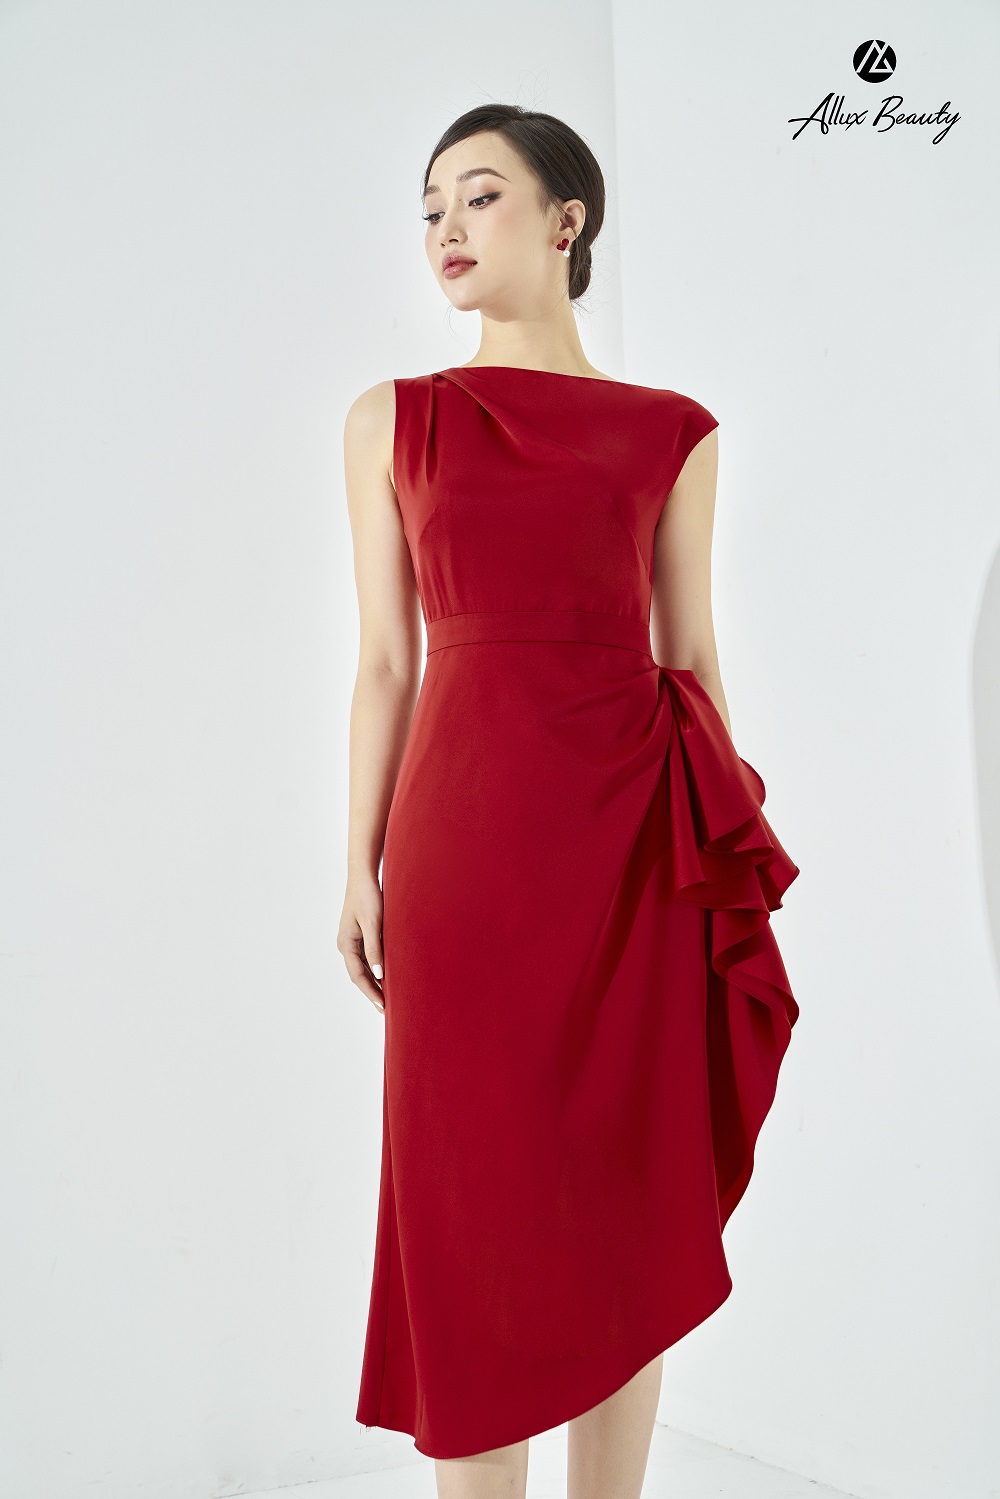 10 mẫu váy đỏ đẹp, sang trọng nhất dành cho các quý cô